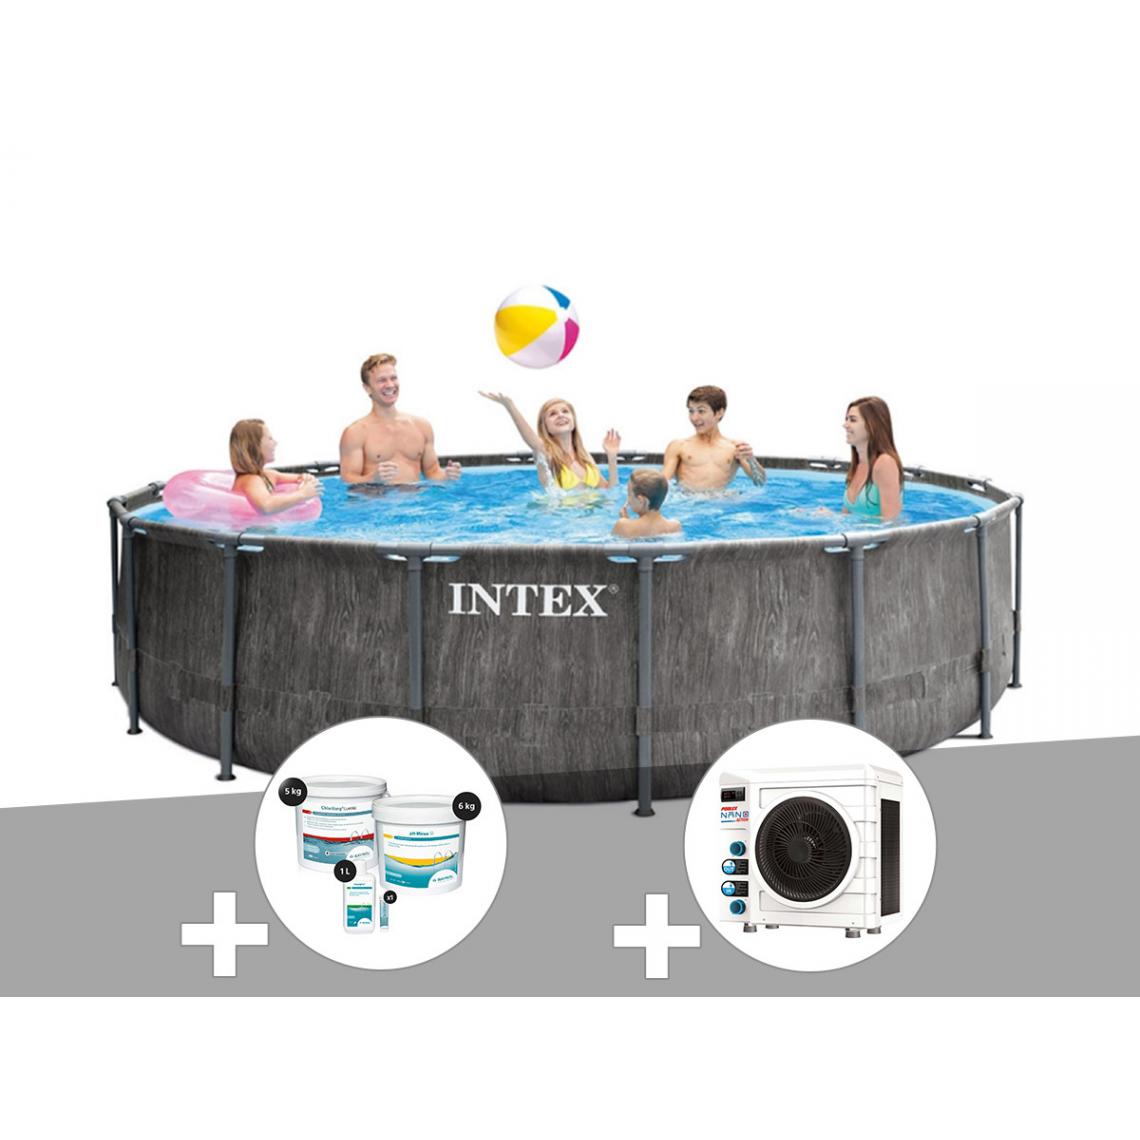 Intex - Kit piscine tubulaire Intex Baltik ronde 4,57 x 1,22 m + Kit de traitement au chlore + Pompe à chaleur - Piscine Tubulaire